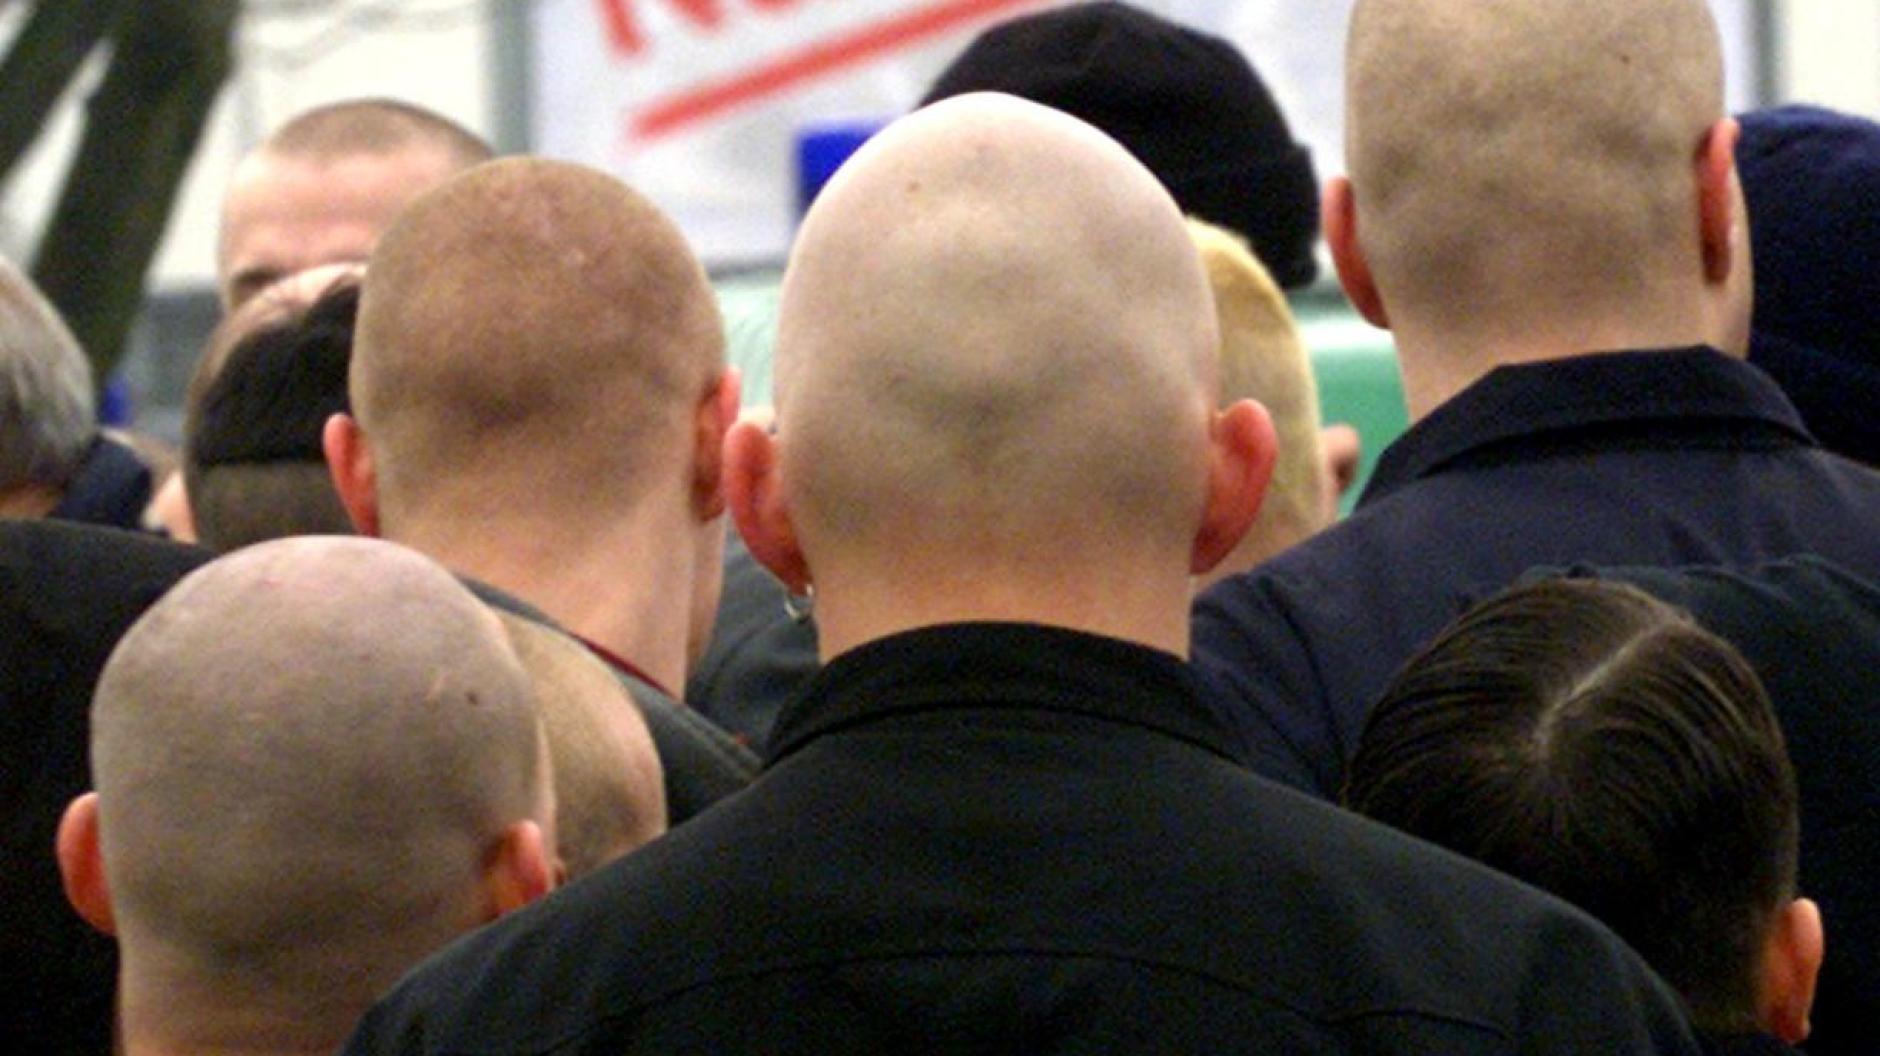 Polizeieinsatz: Skinhead-Konzert verhindert | Mindelheimer ...